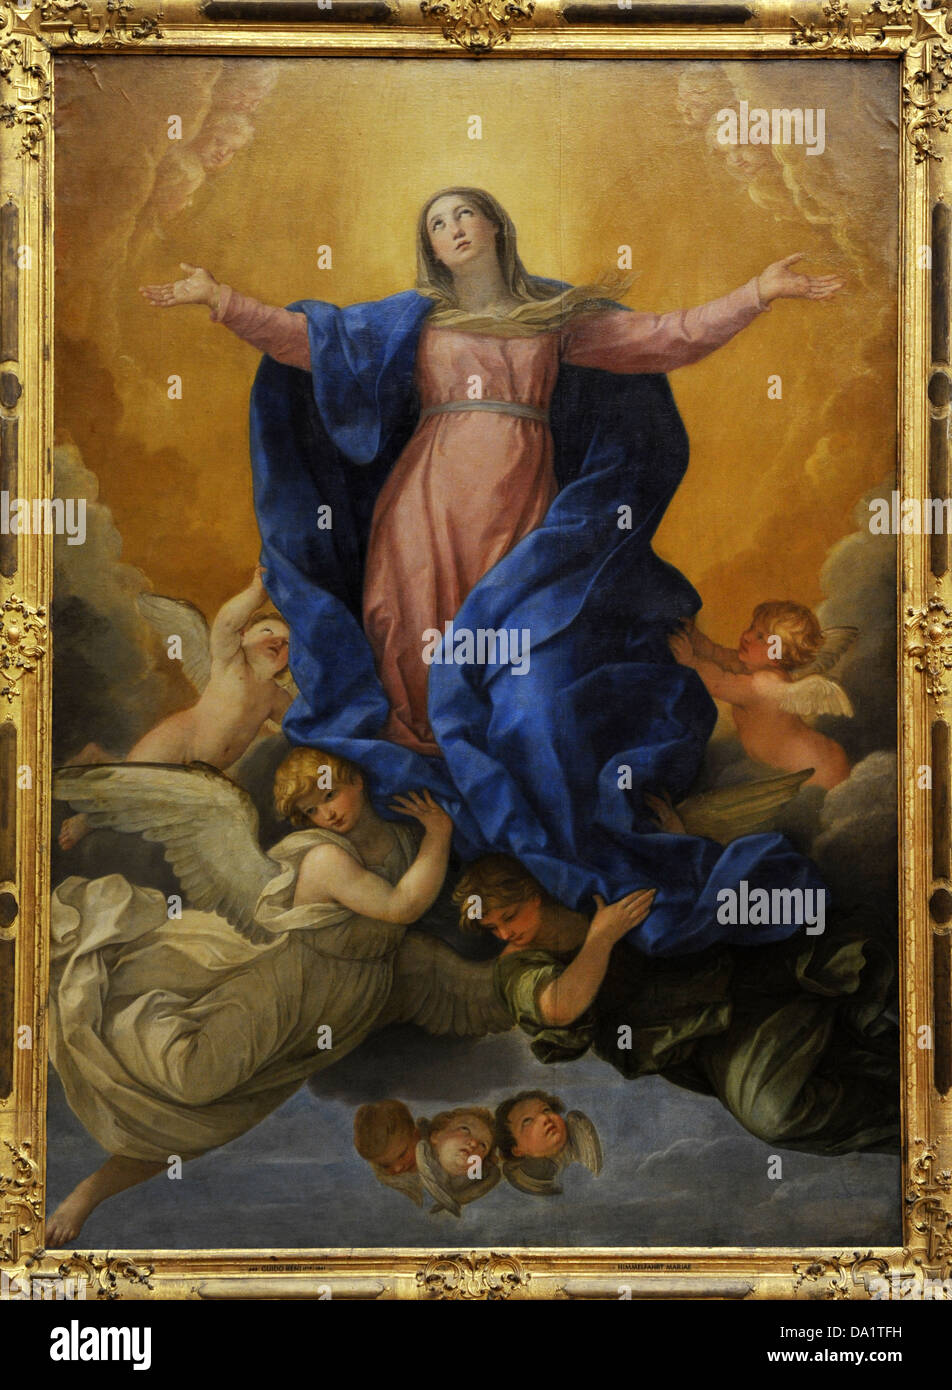 Guido Reni (1575-1642). Pittore italiano. L'Assunzione della Vergine Maria, 1642. Alte Pinakothek. Monaco di Baviera. Germania. Foto Stock